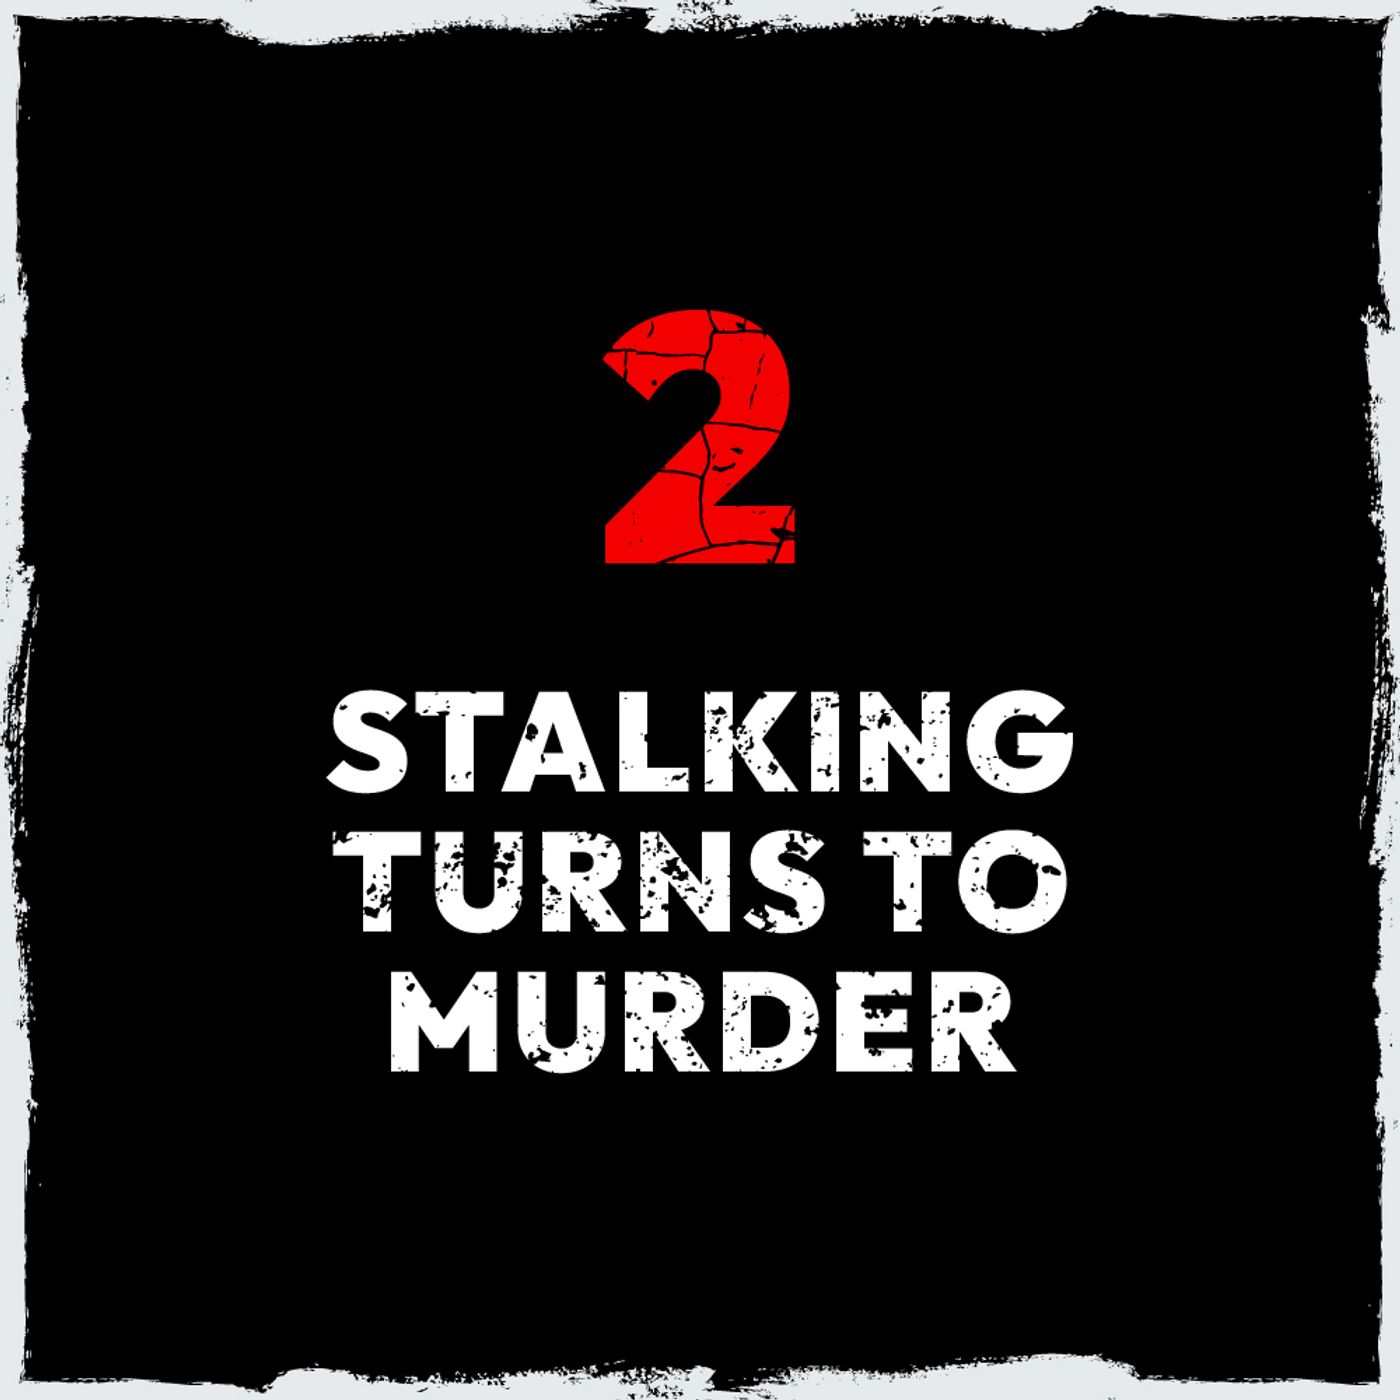 2: Episode 2: Stalking turns to murder